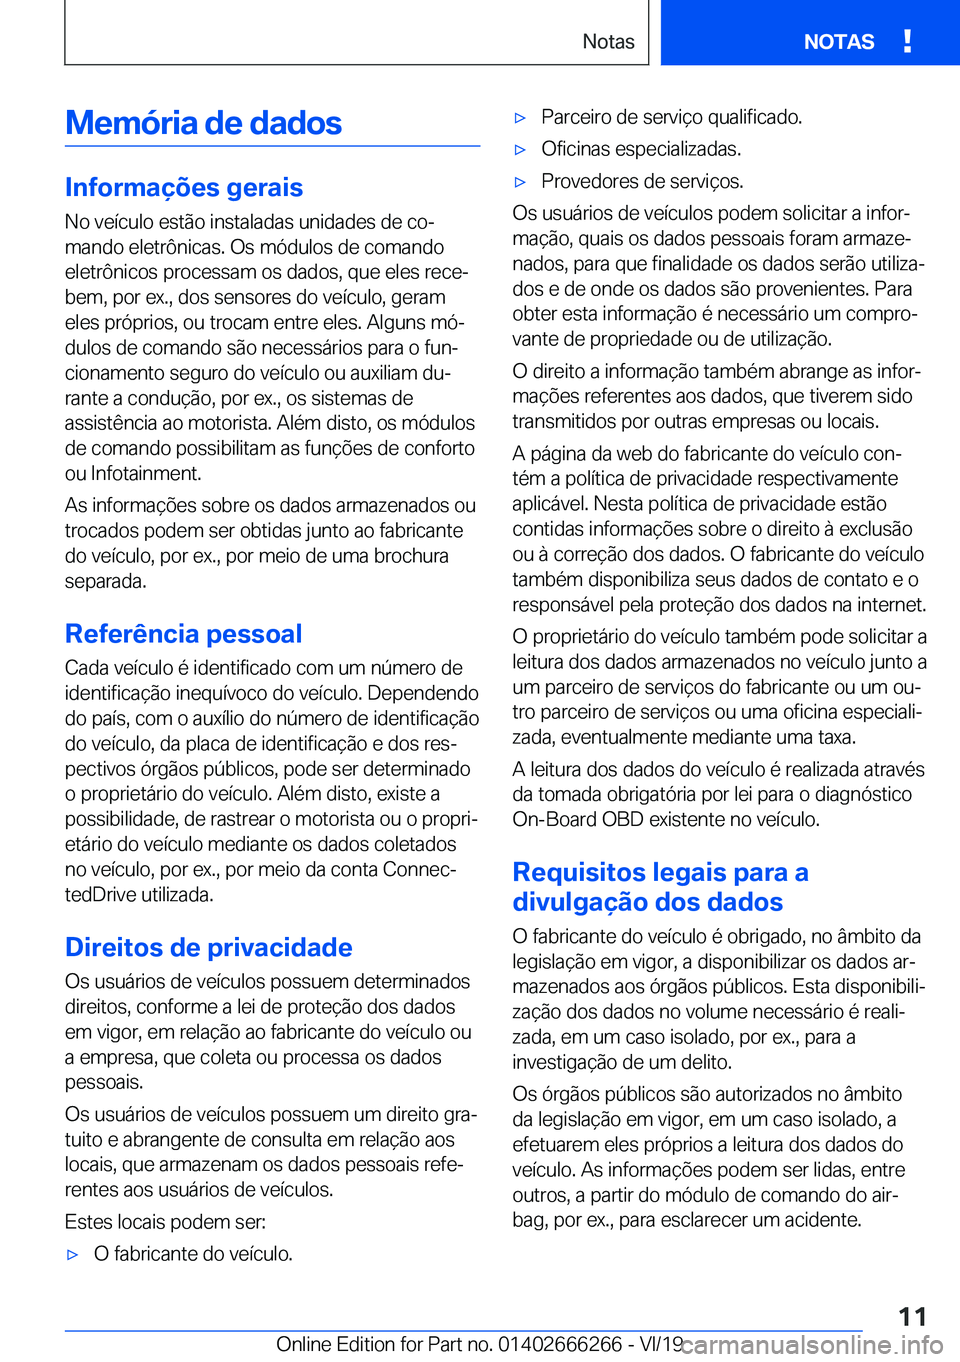 BMW 2 SERIES COUPE 2020  Manual do condutor (in Portuguese) �M�e�m�ó�r�i�a��d�e��d�a�d�o�s
�I�n�f�o�r�m�a�